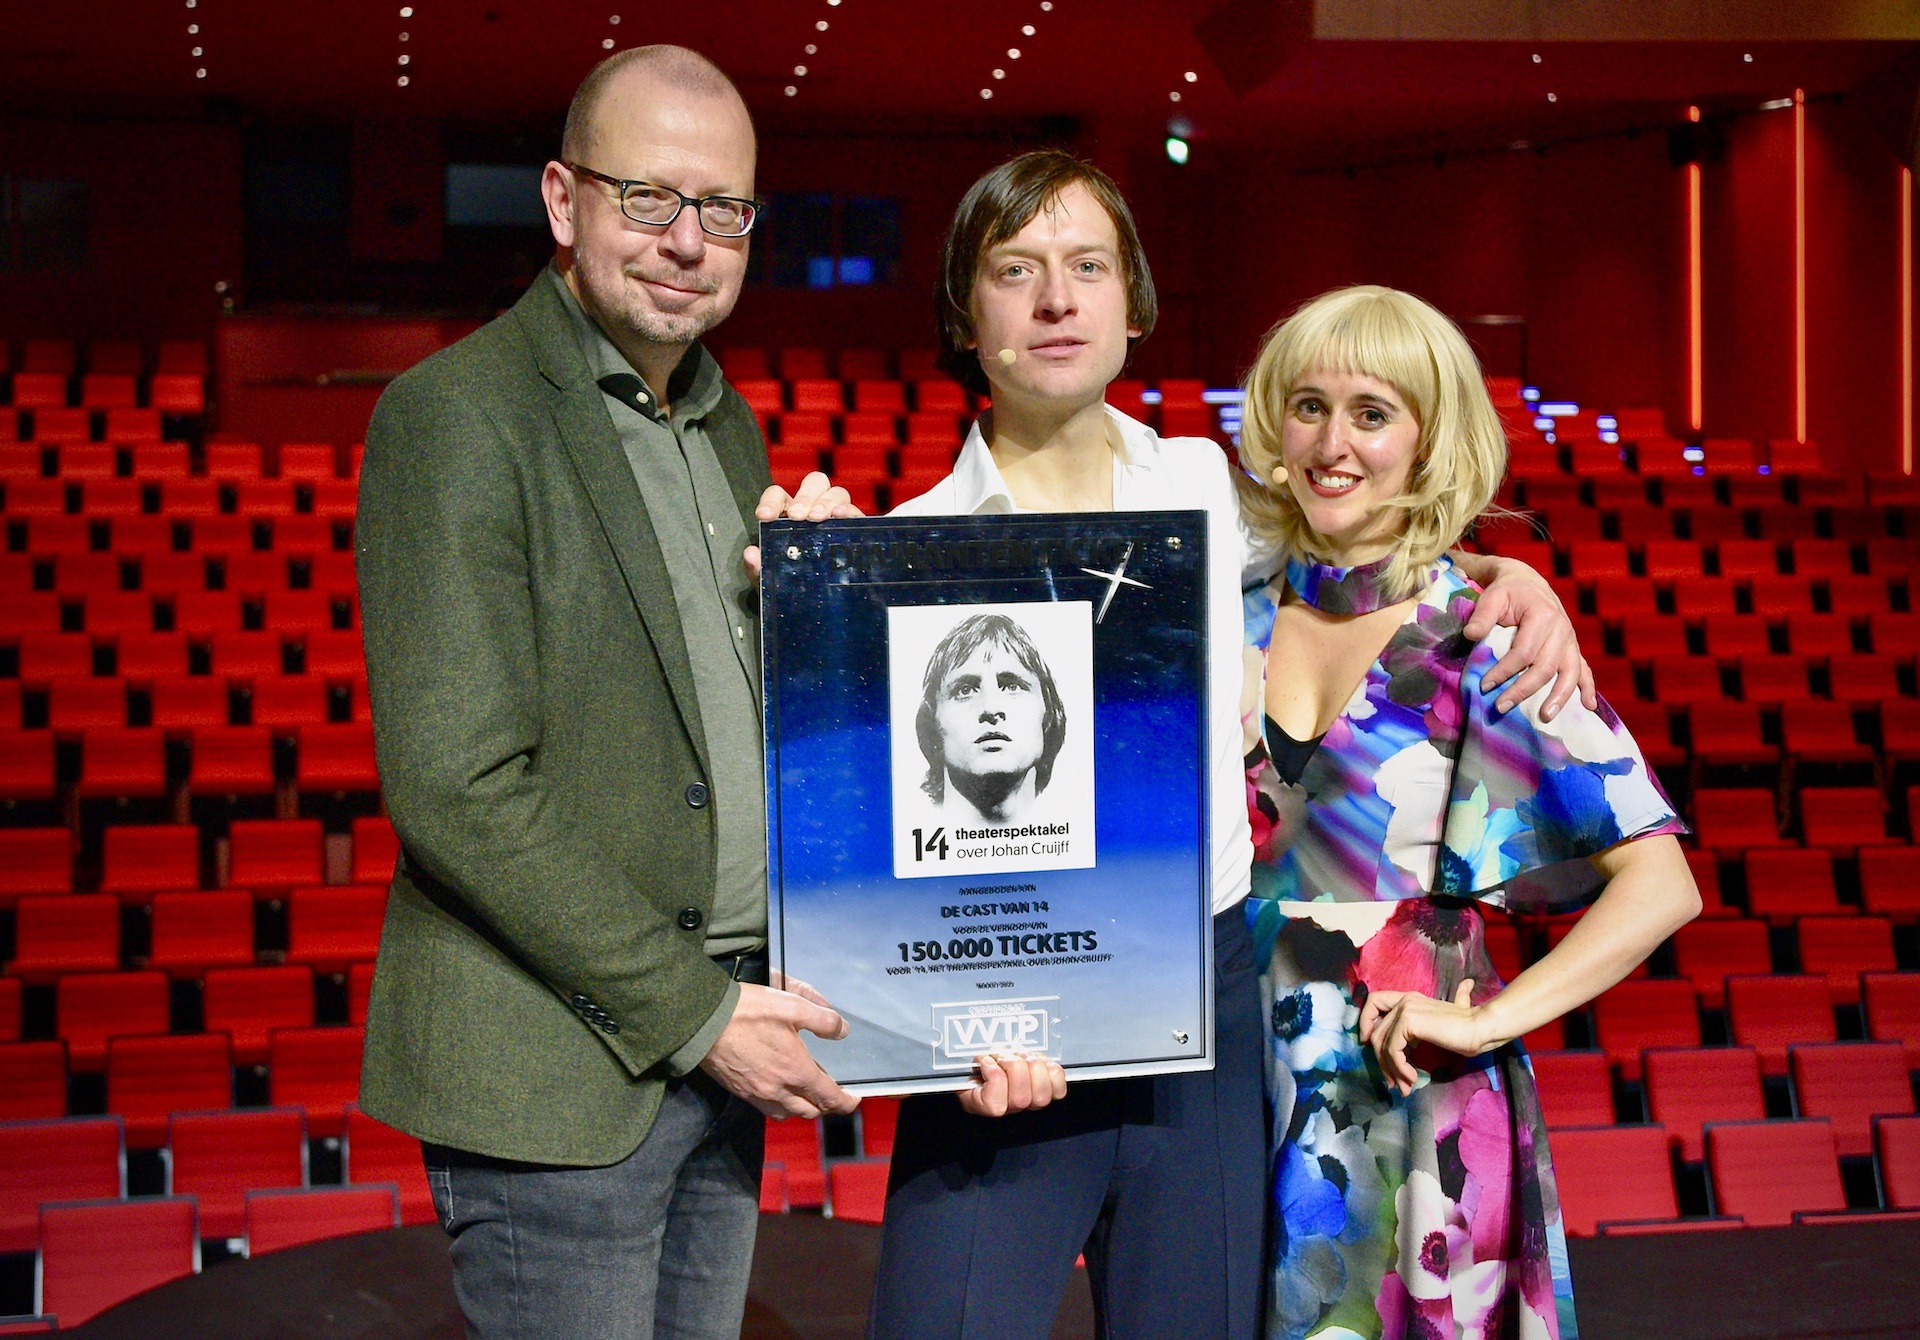 '14 het theaterspektakel' ontvangt Diamanten Ticket Award